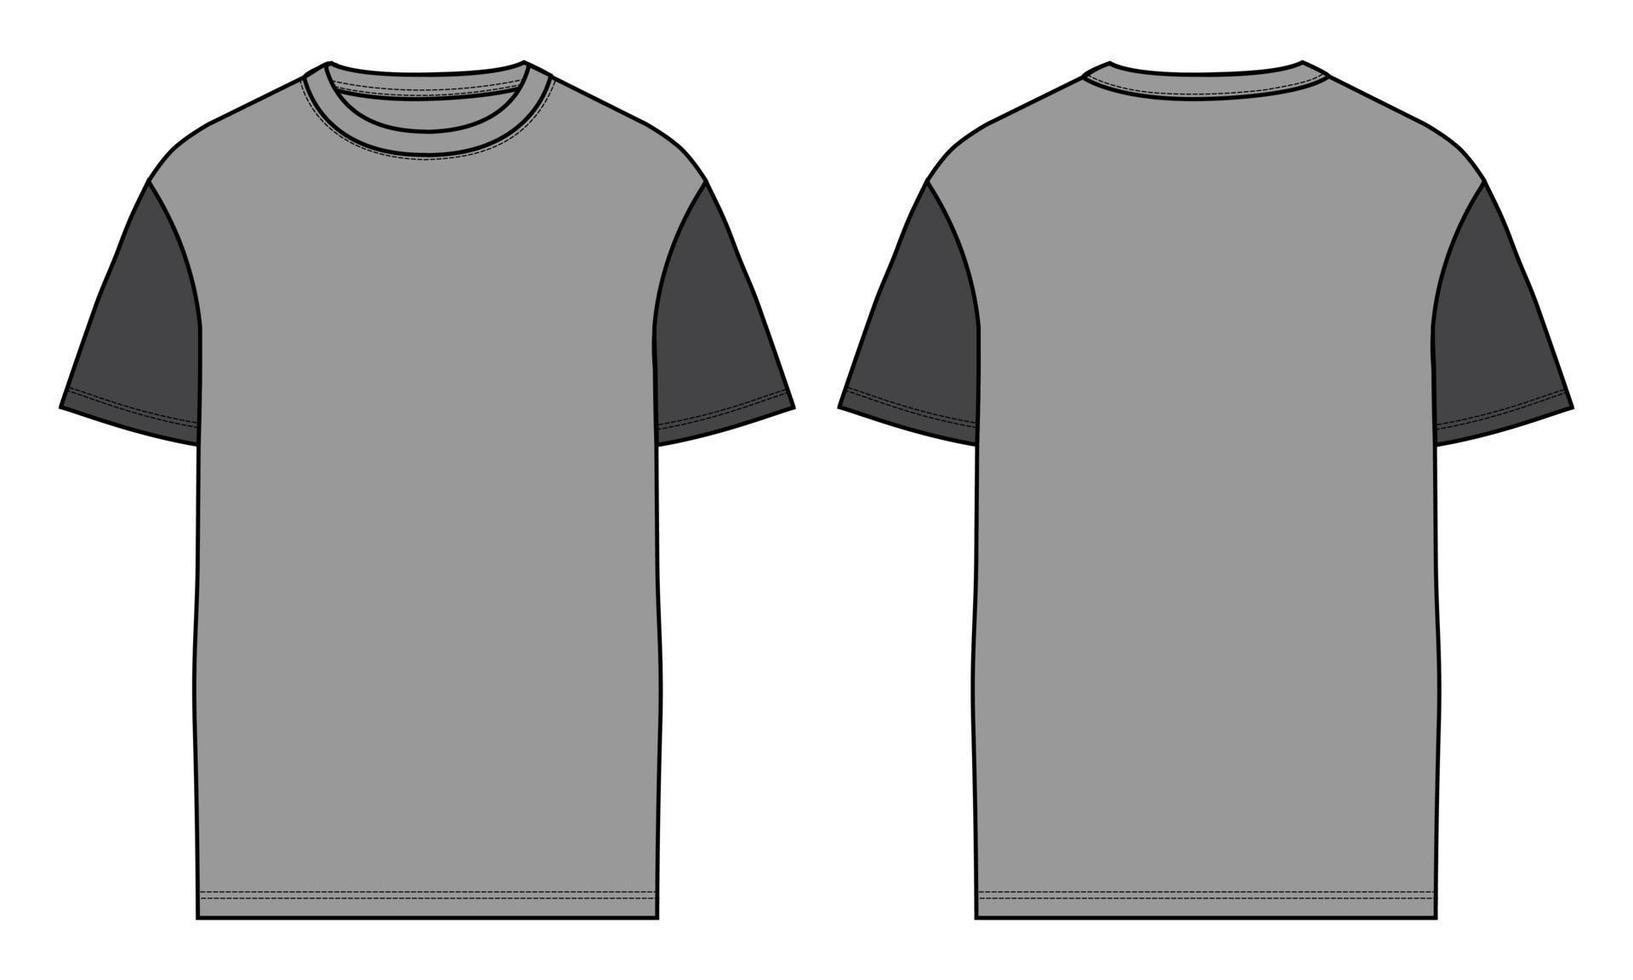 zweifarbiges kurzärmliges T-Shirt im flachen Stil, Vektorgrafik-Vorlage, Vorder- und Rückansicht vektor